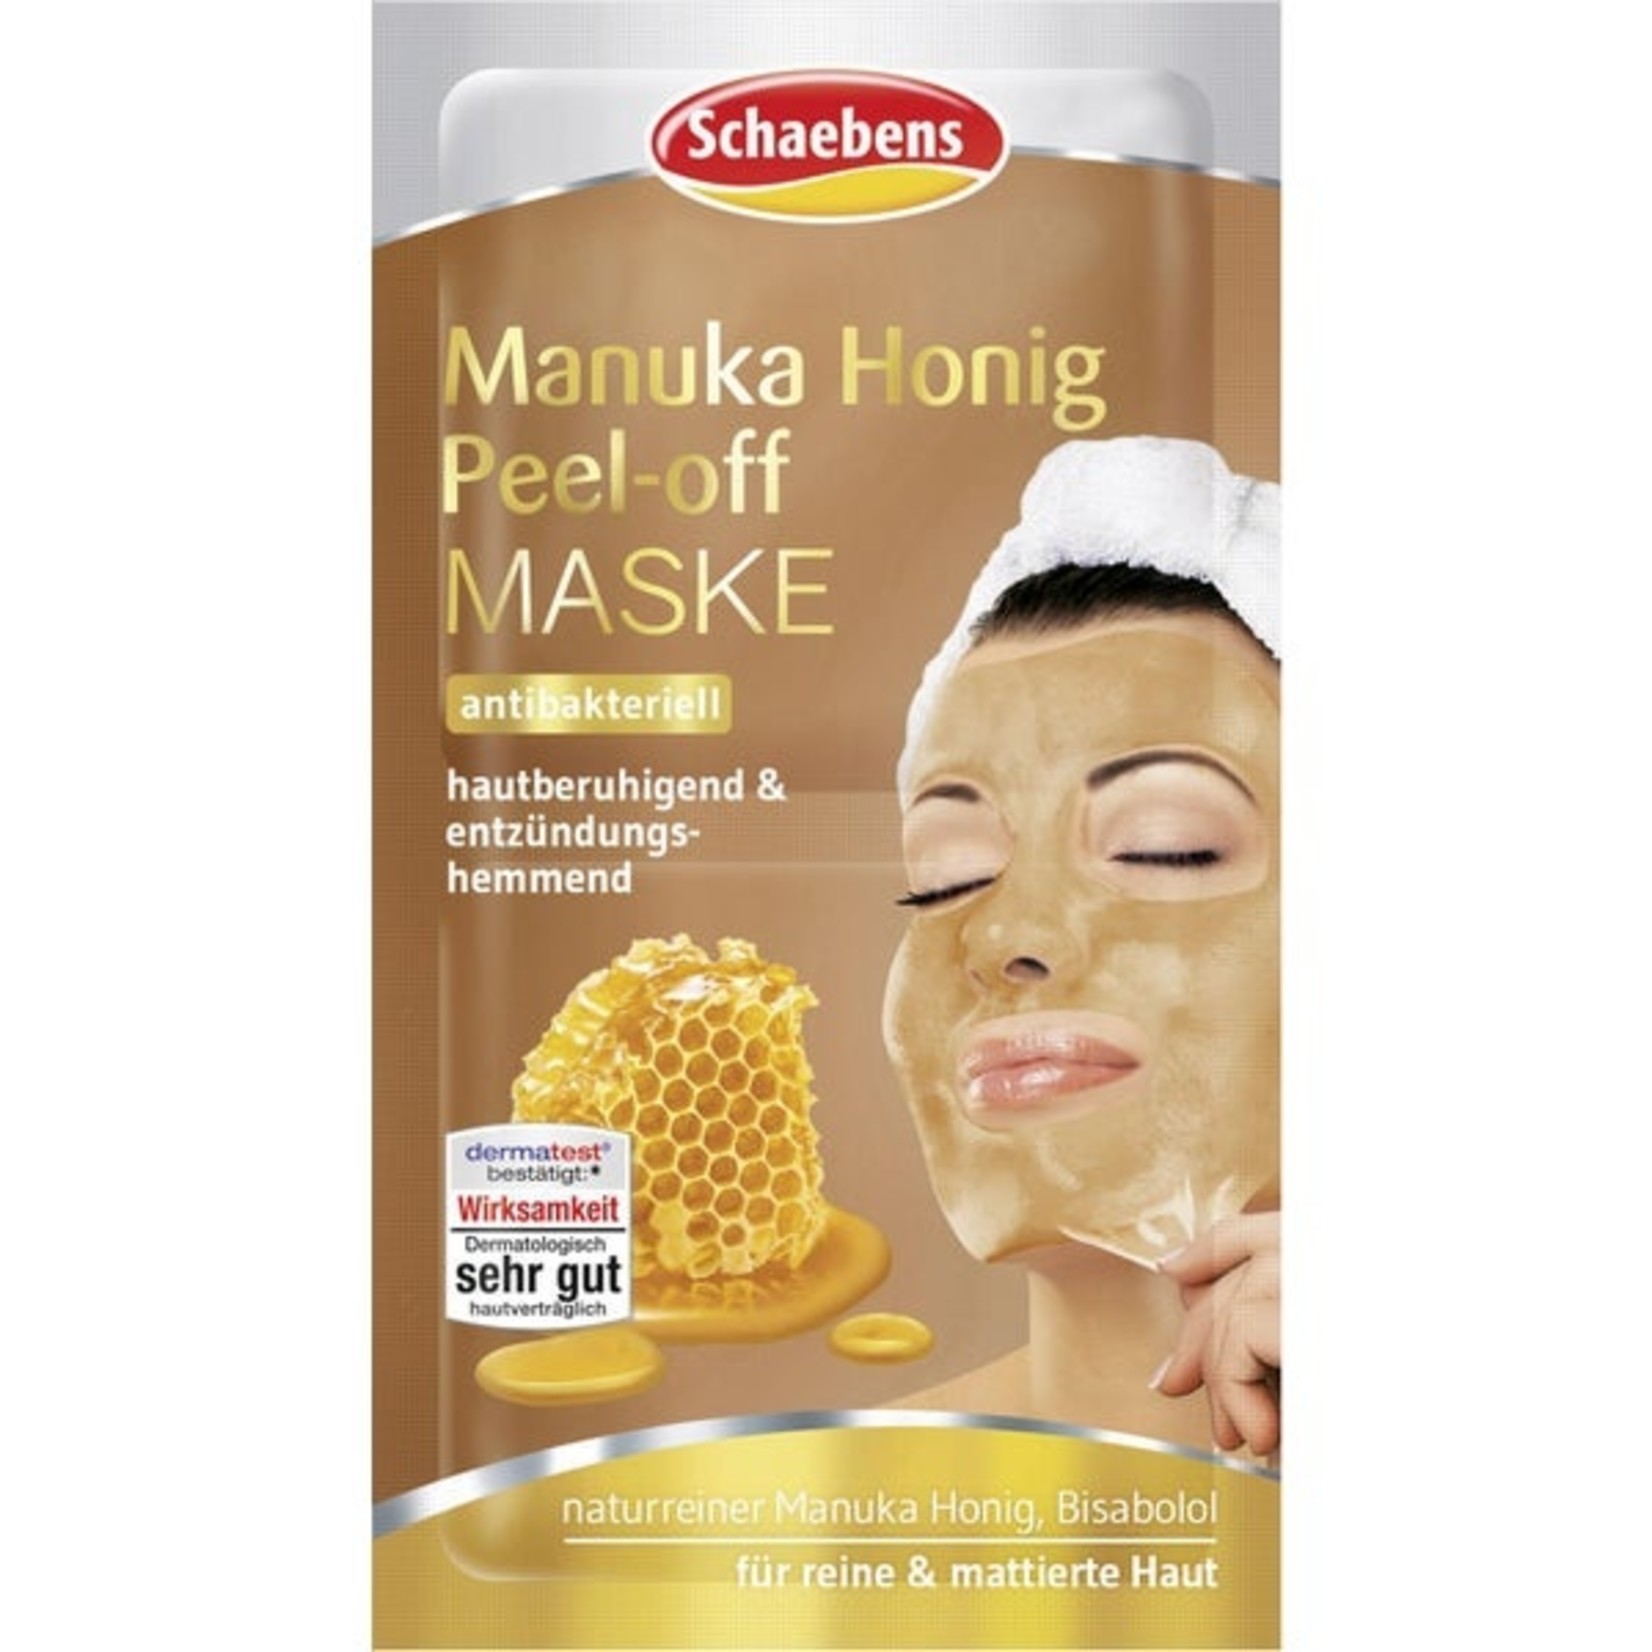 Manuka Honey Peel-off Mask